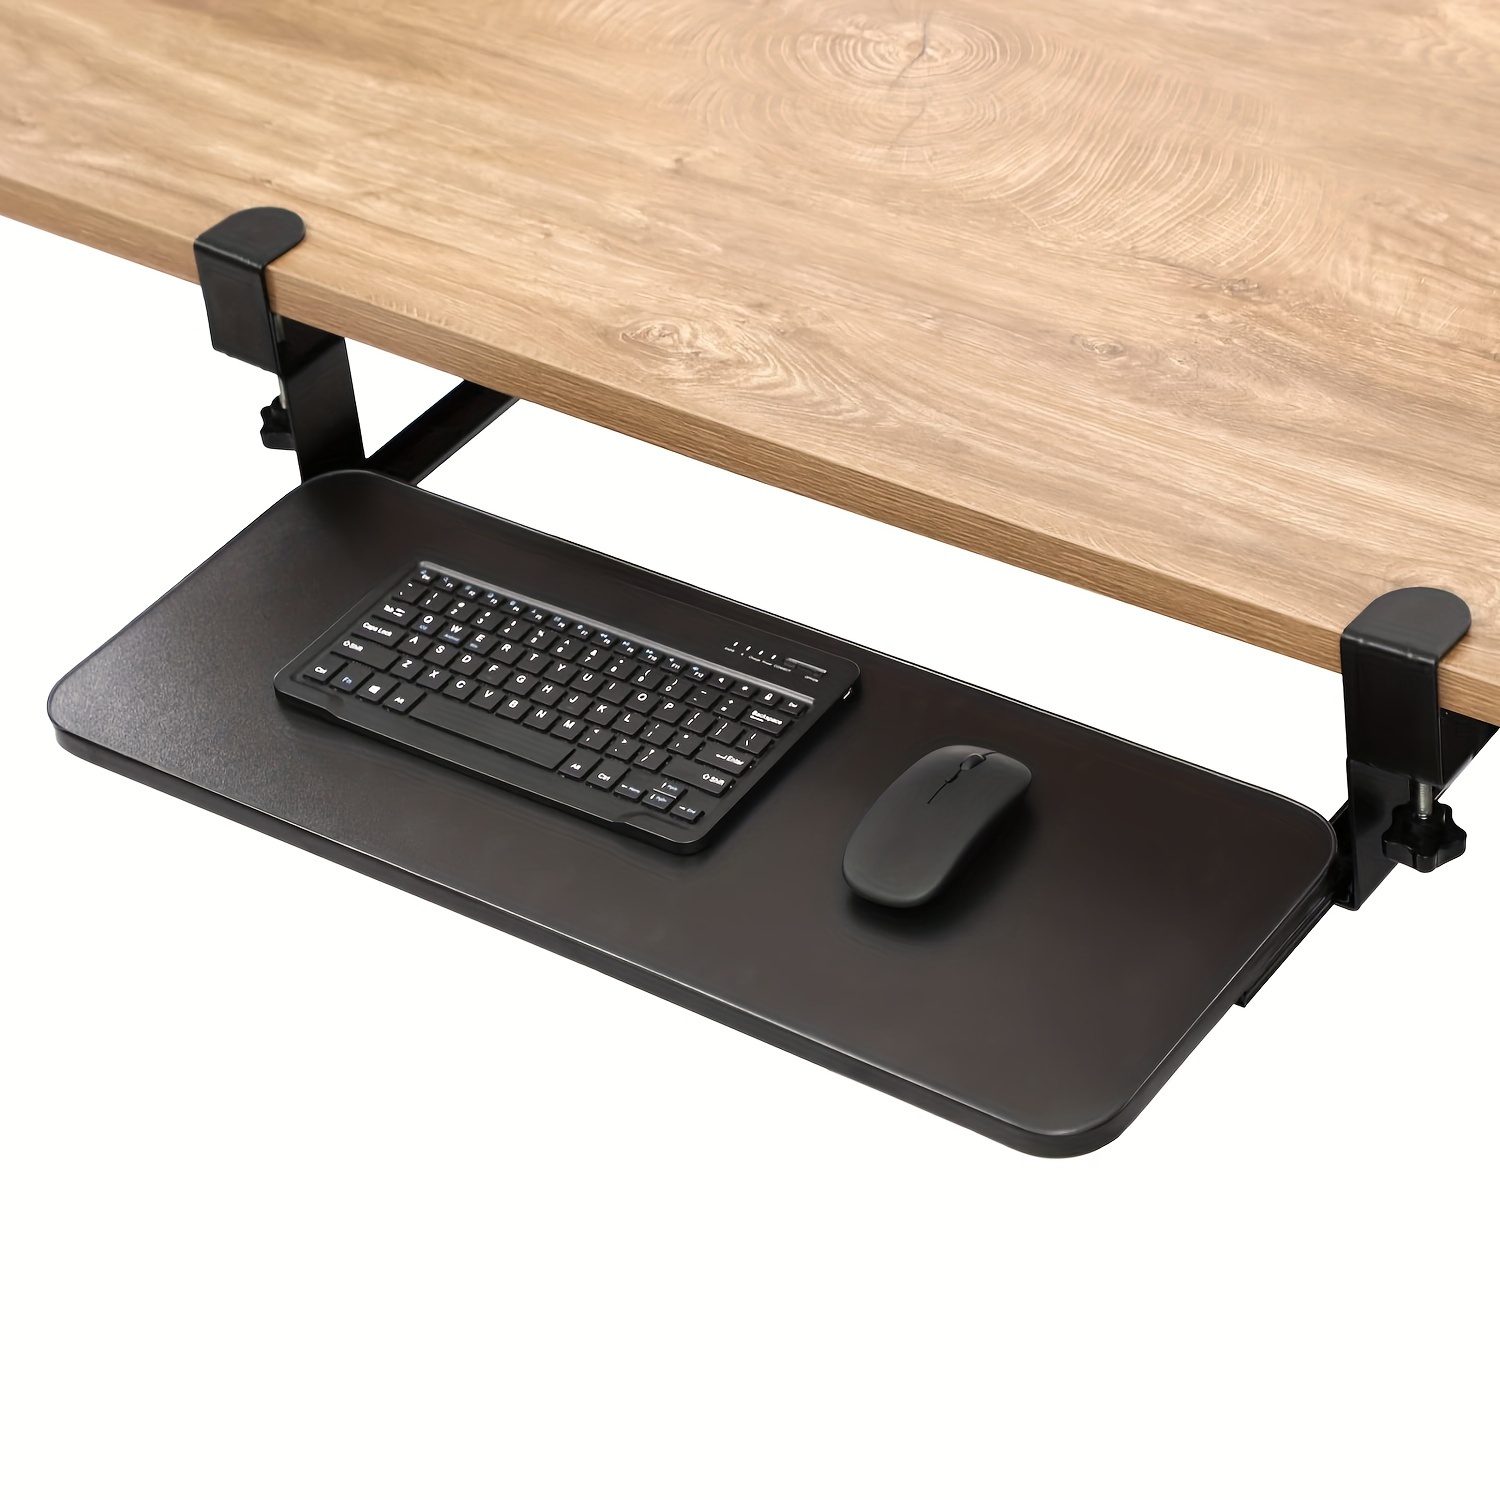 Bandeja deslizante para teclado, soporte para teclado sin perforaciones,  cajón de altura ajustable, extensor de escritorio para ordenador, Color  teca